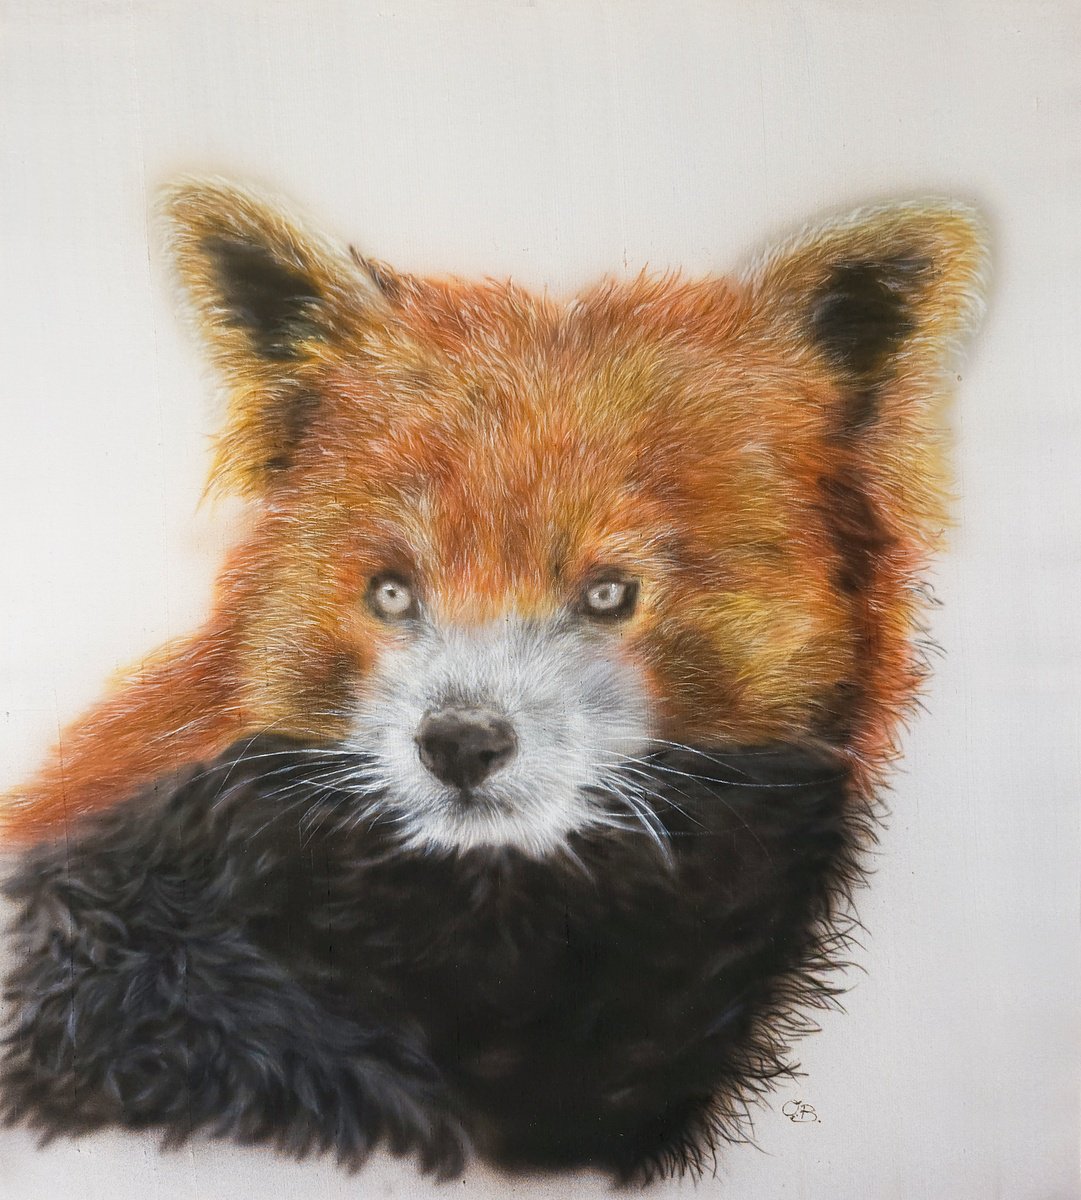 Red Velvet - Silk painted realistic red panda portrait by Olga Belova